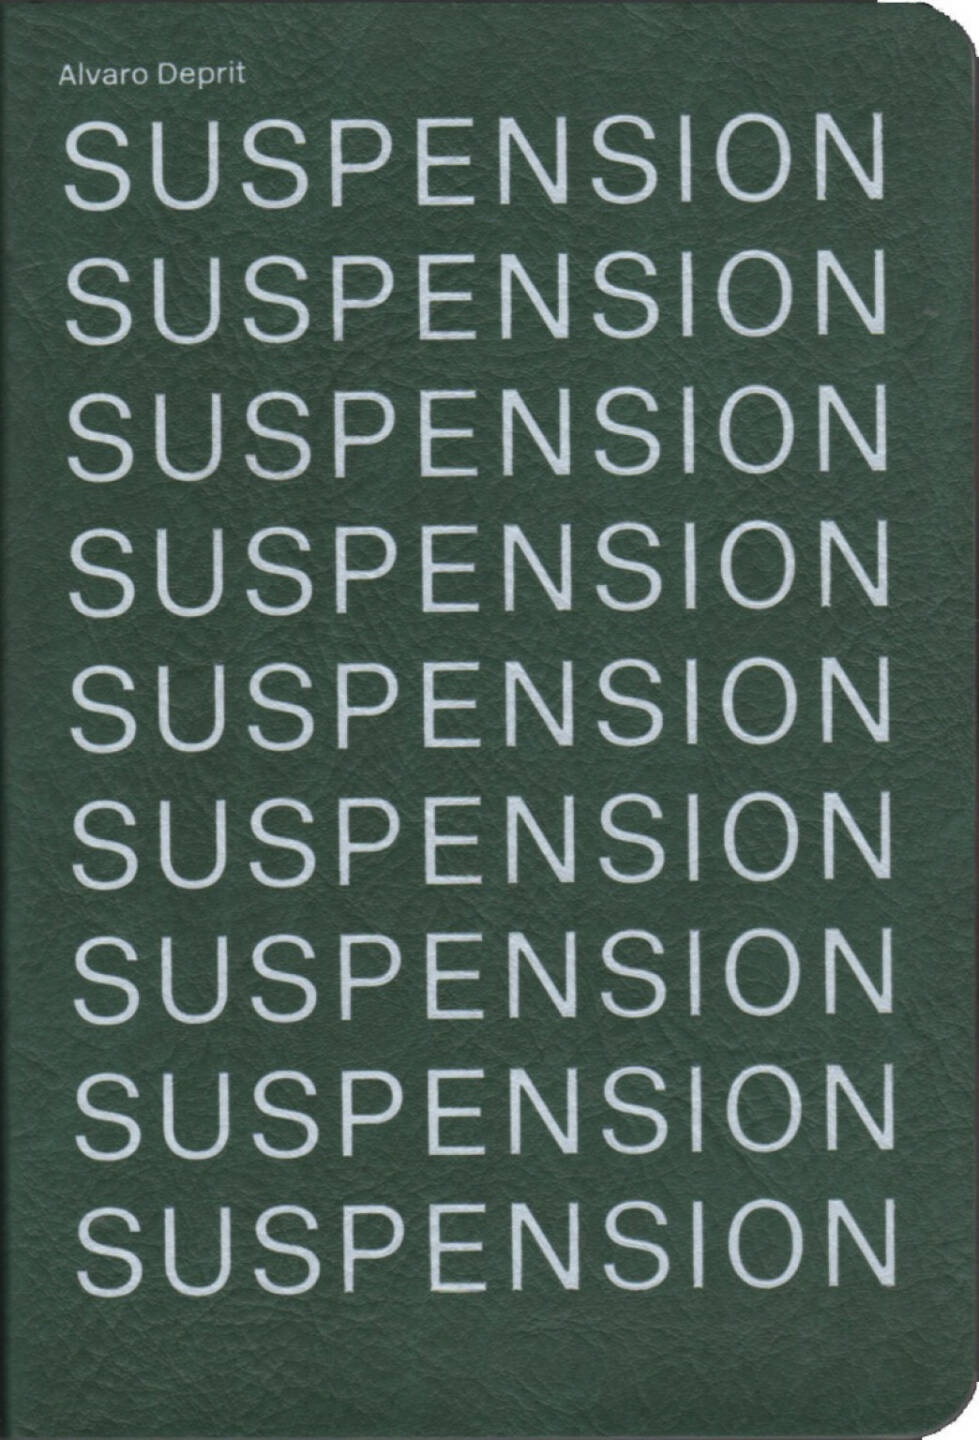 Alvaro Deprit - SUSPENSION, Viewbook 2015, Cover - http://josefchladek.com/book/alvaro_deprit_-_suspension